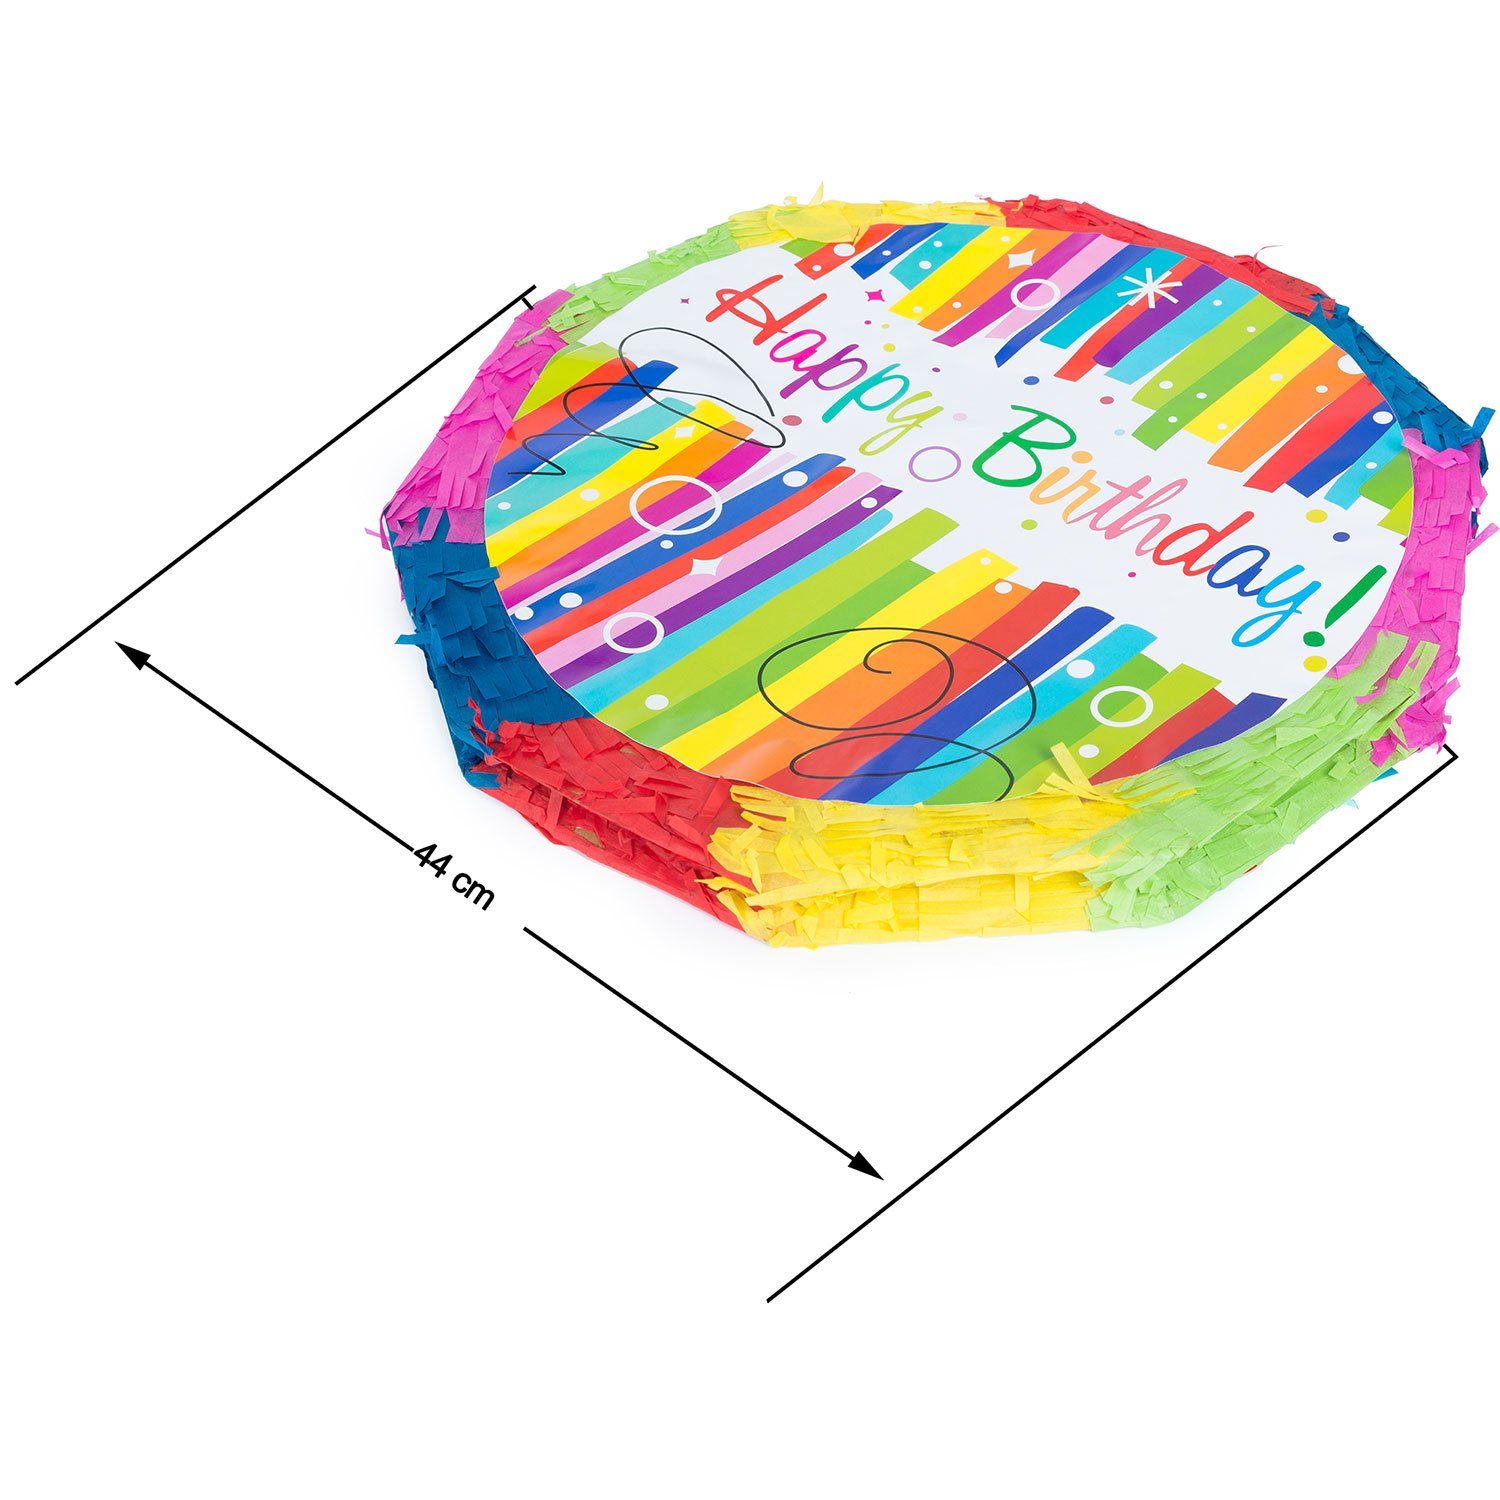 Befüllen Pinata Happy Birthday zum Befüllen, Party-Dekoration Papierdekoration Goods+Gadgets zum